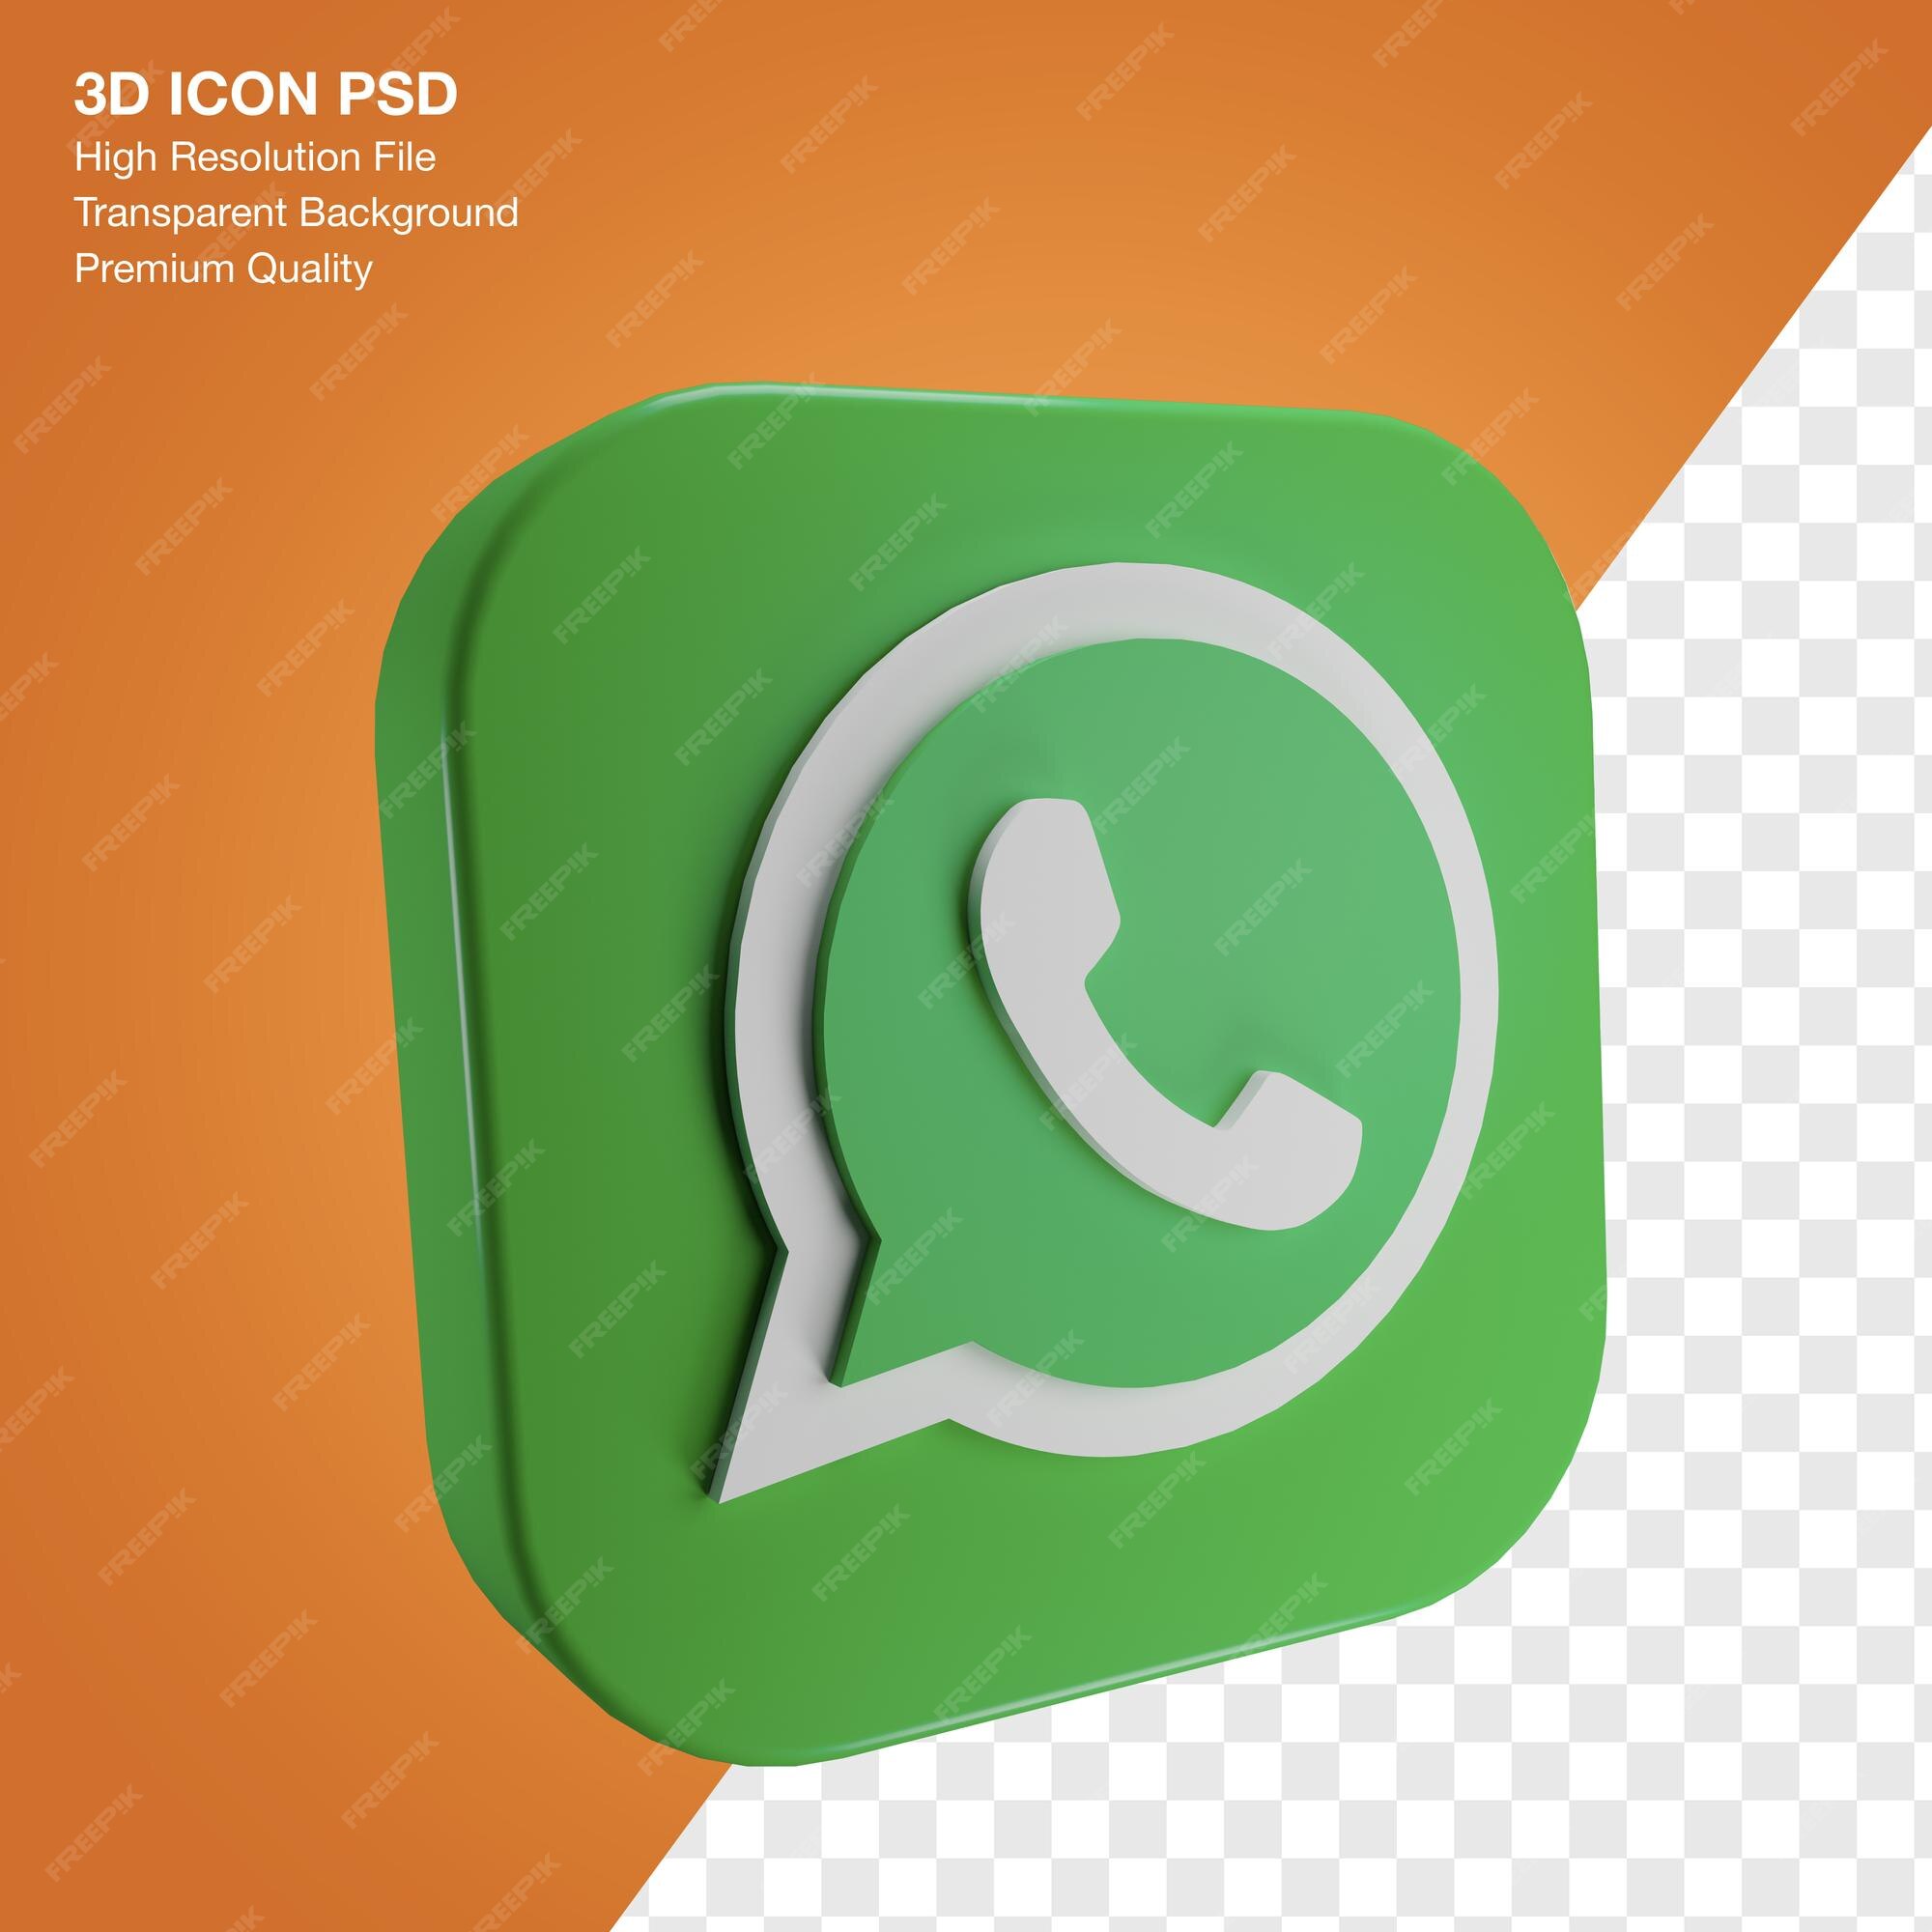 Ajuste Dos Logotipos Sociais Populares Dos Meios 3d, Whatsapp De